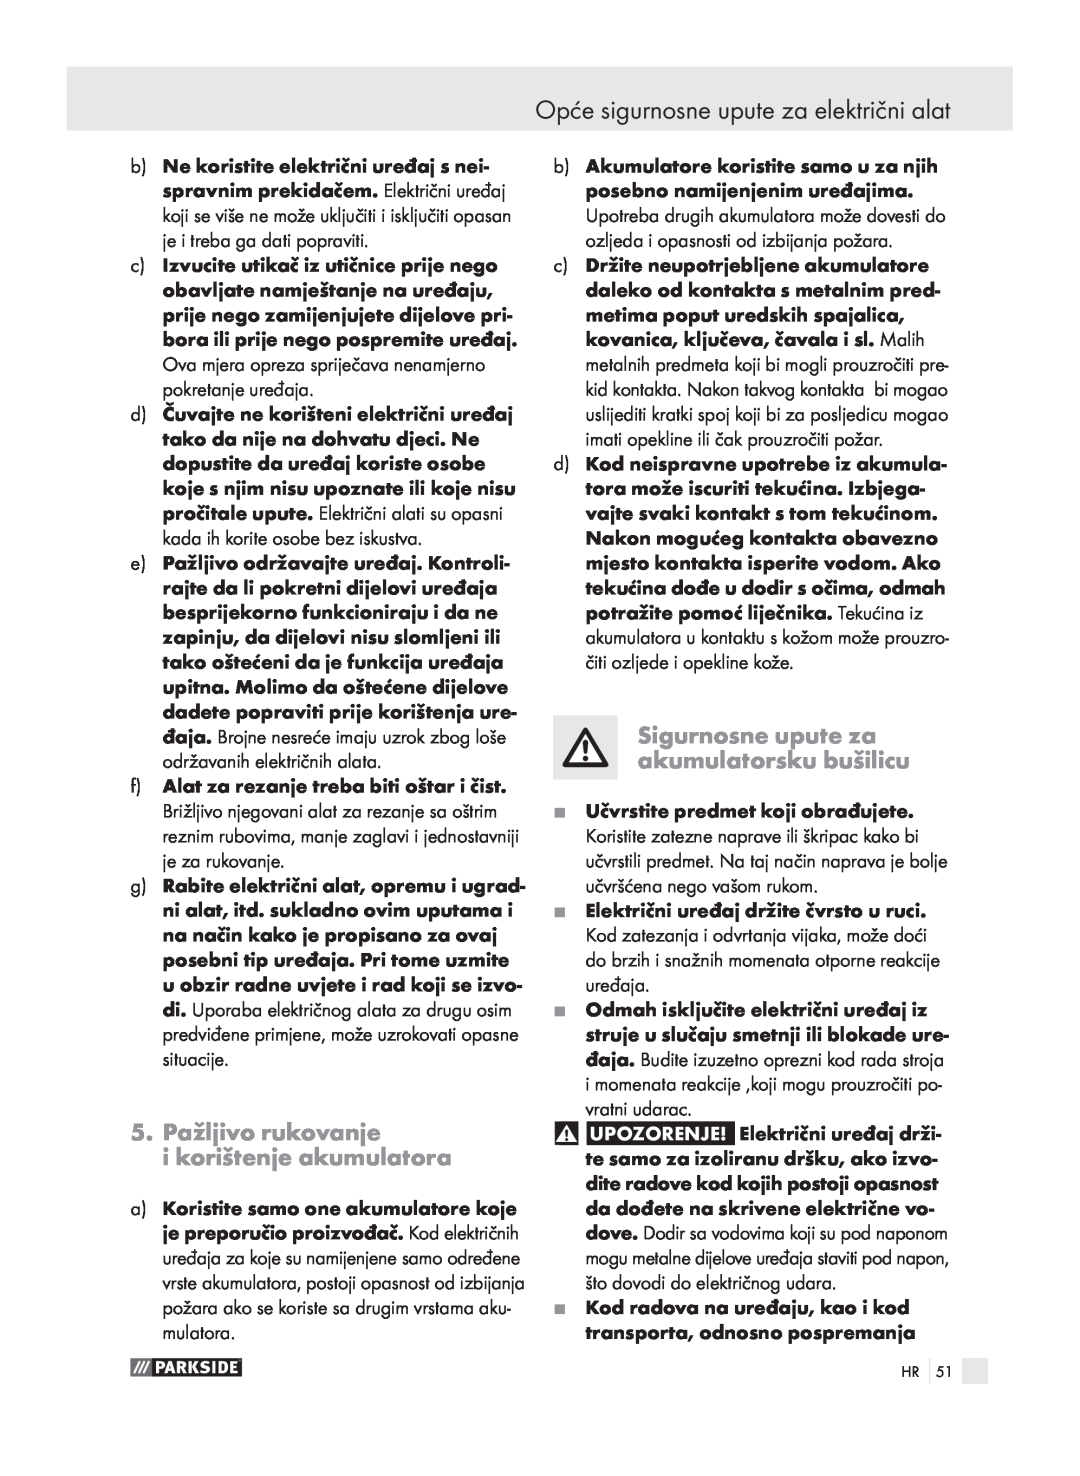 Parkside X3, 6-LIA manual 5. Pažljivo rukovanje i korištenje akumulatora, Sigurnosne upute za akumulatorsku bušilicu 